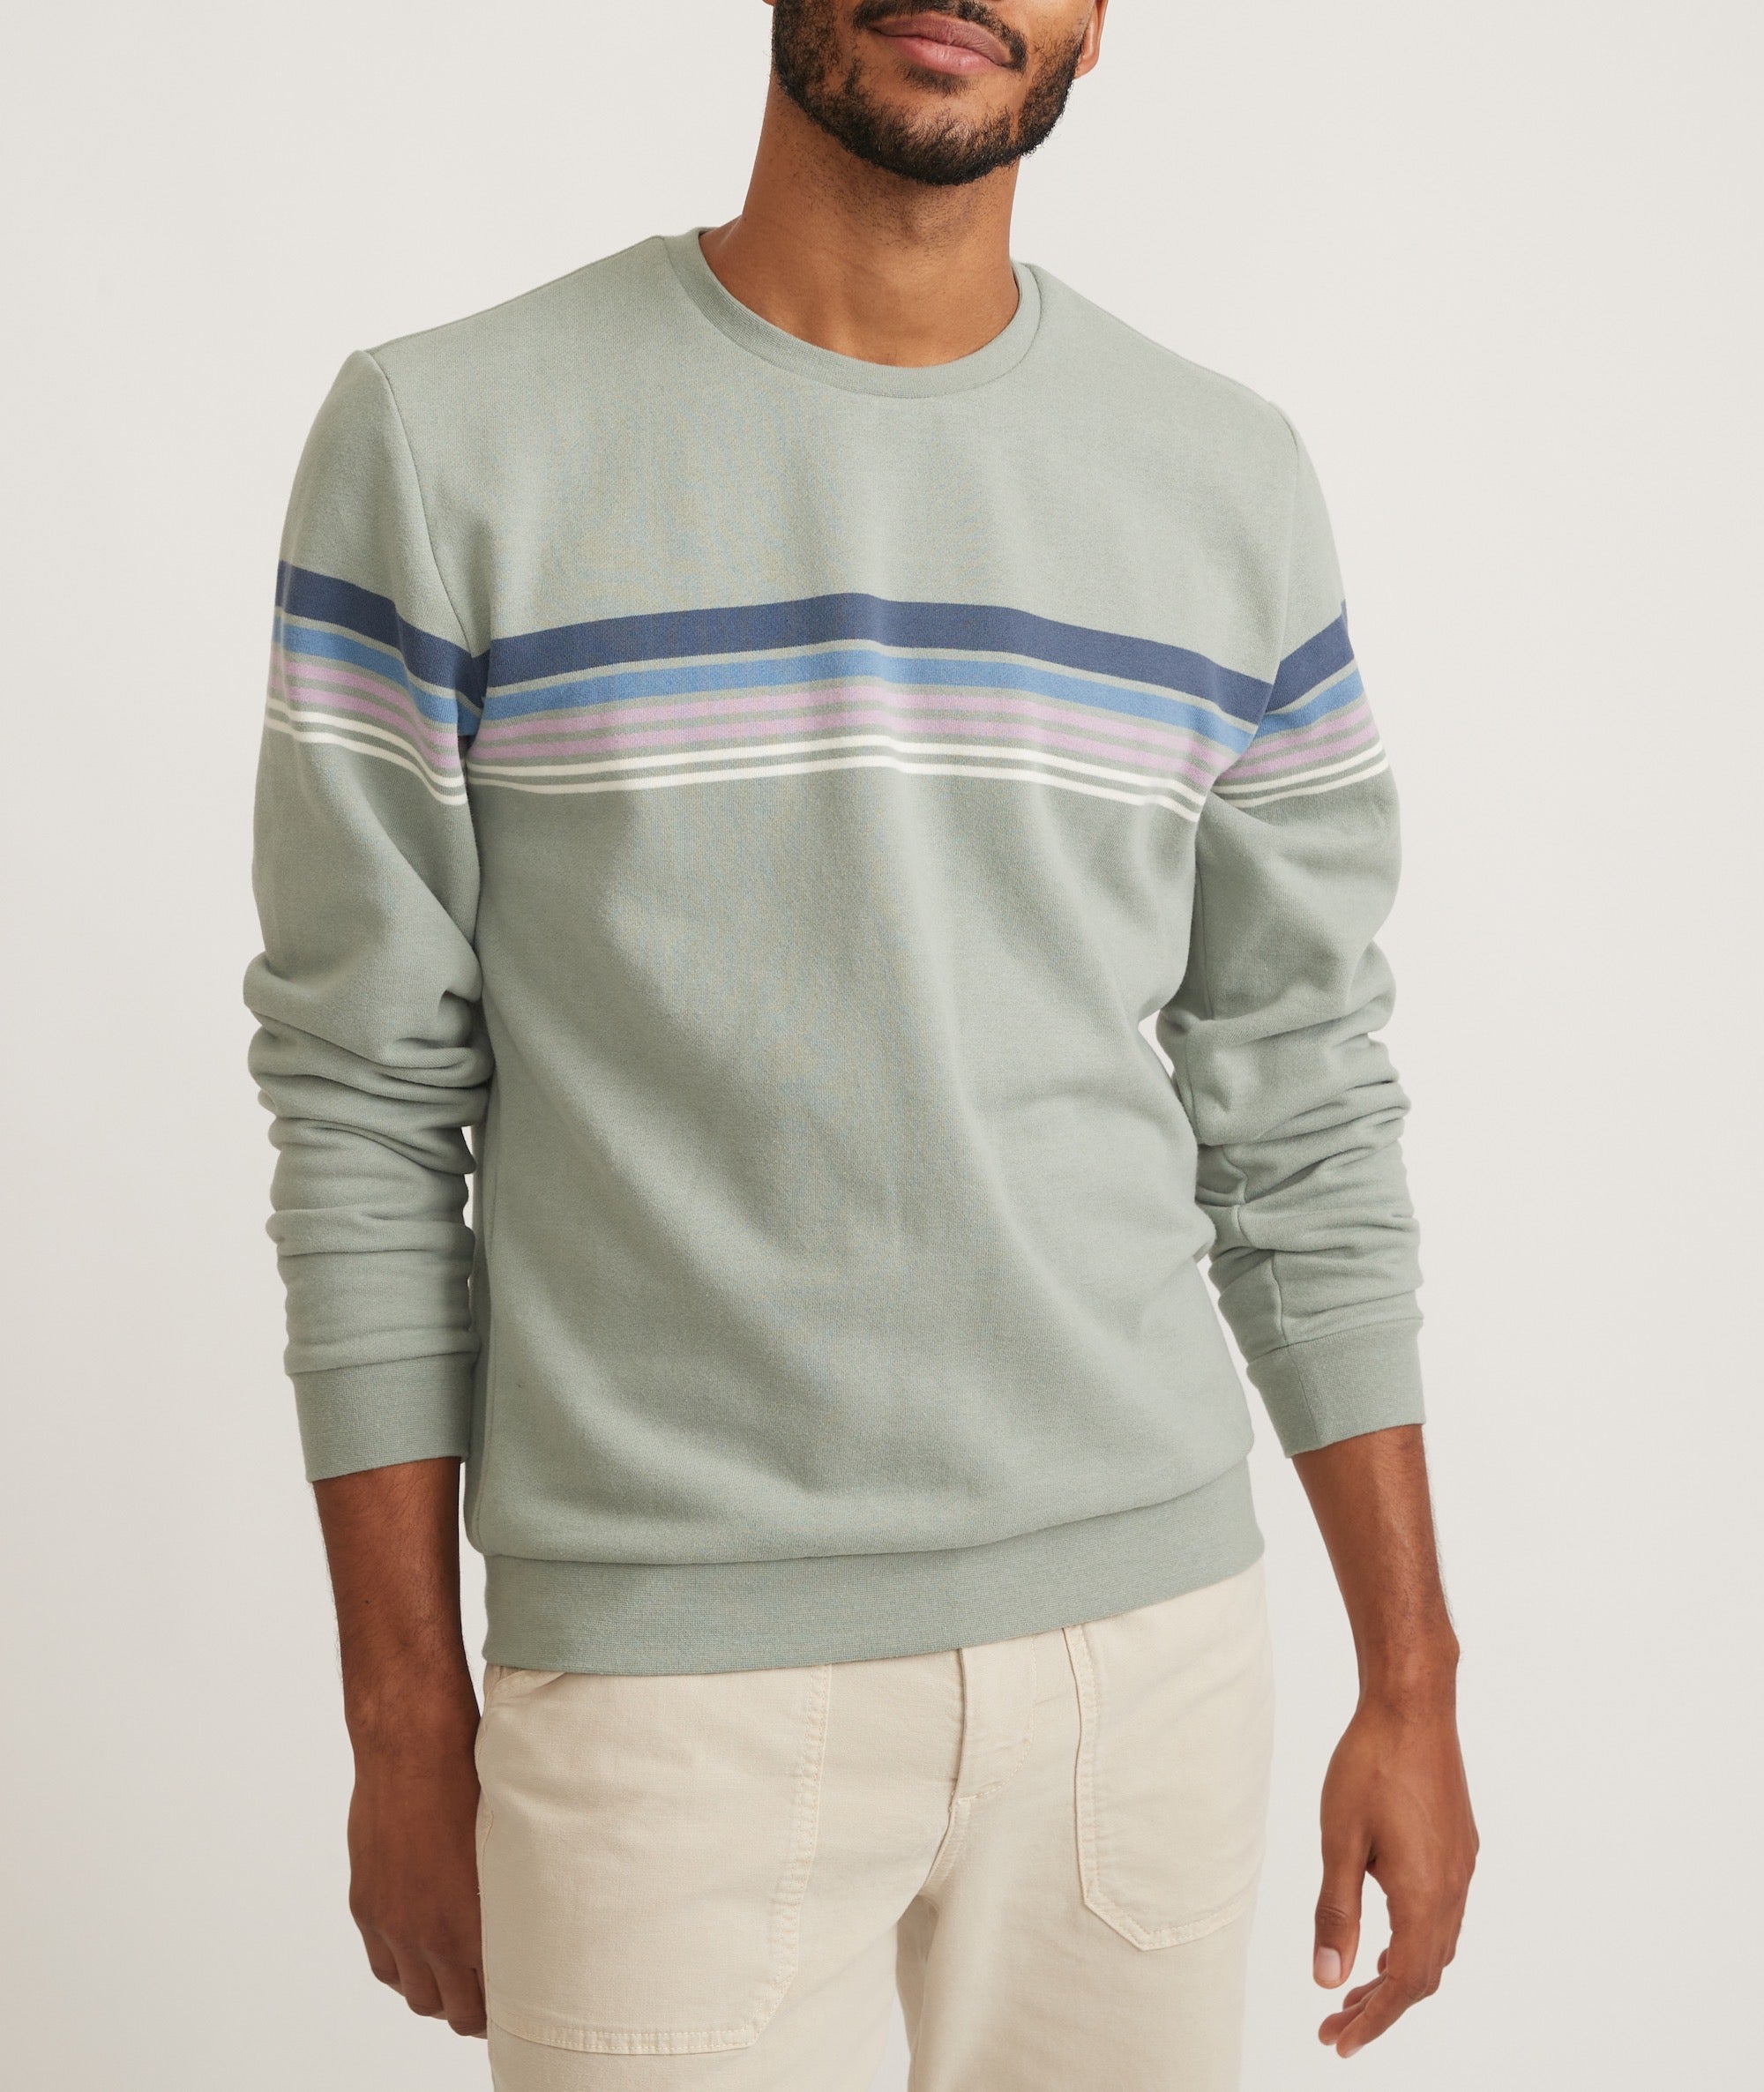 Sherpa Pullover Sweatshirt – Marine Layer